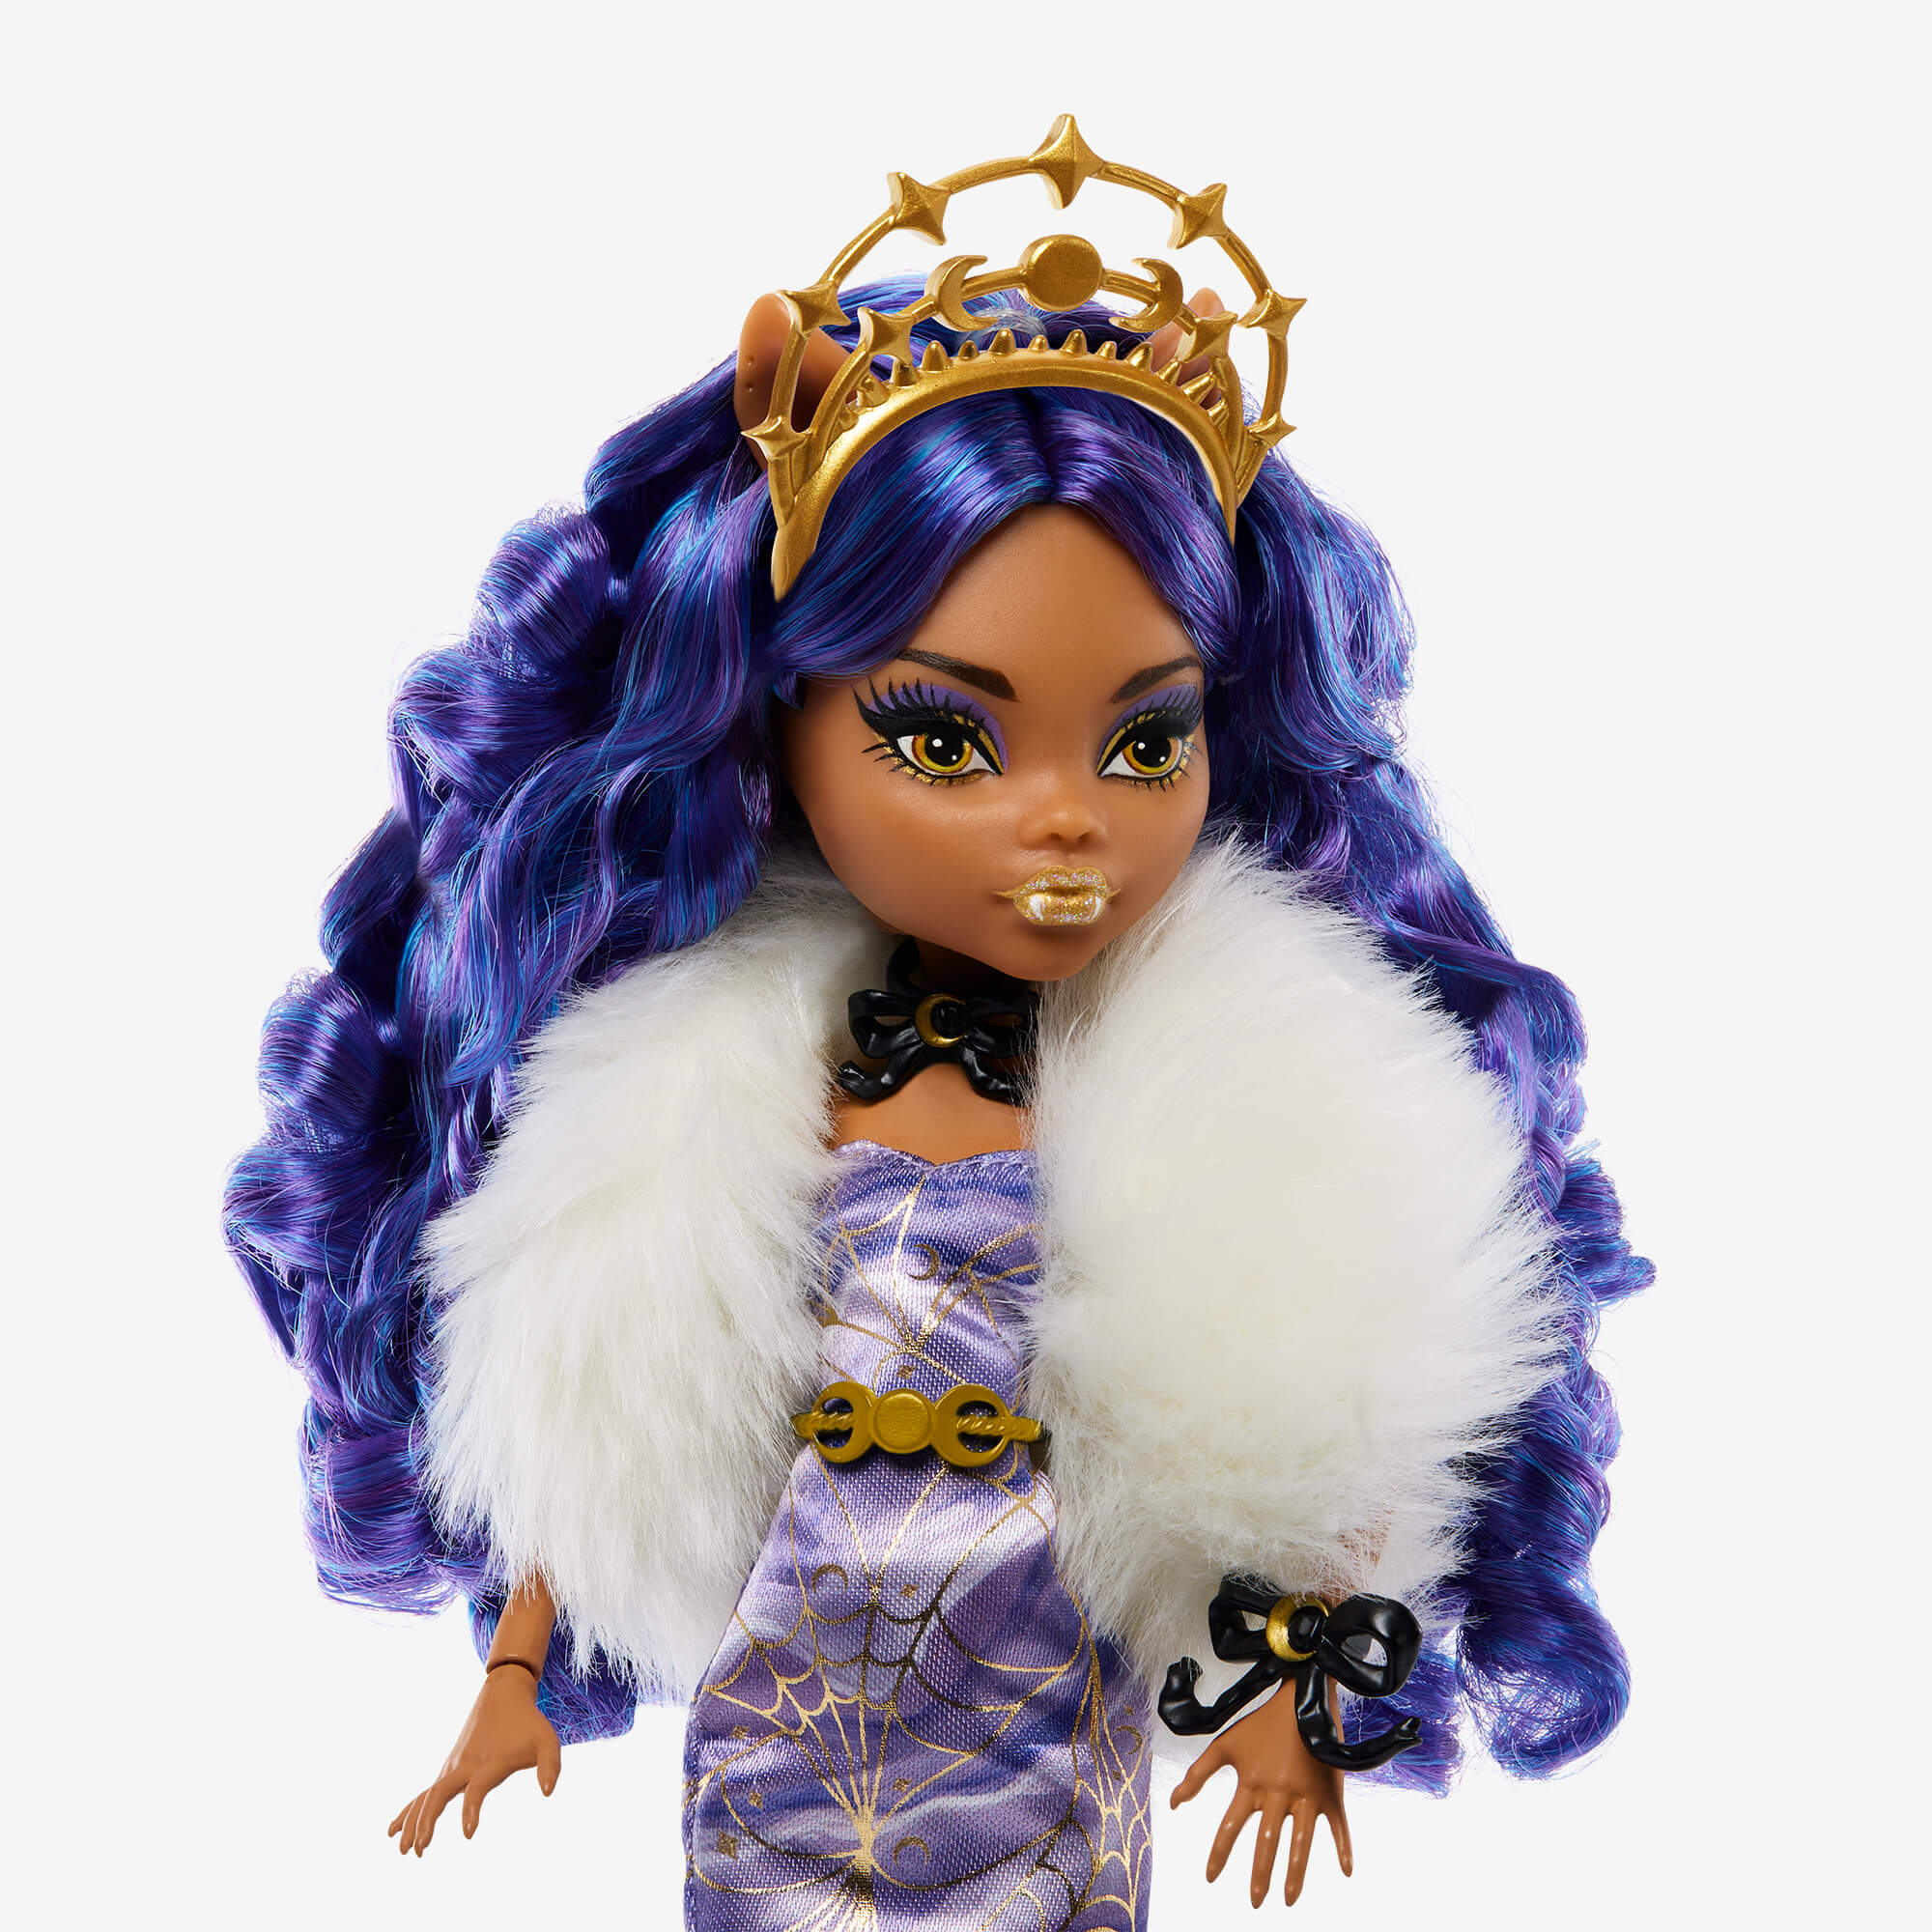 Monster High Howliday Winter Edition Clawdeen Wolf Doll – Mattel